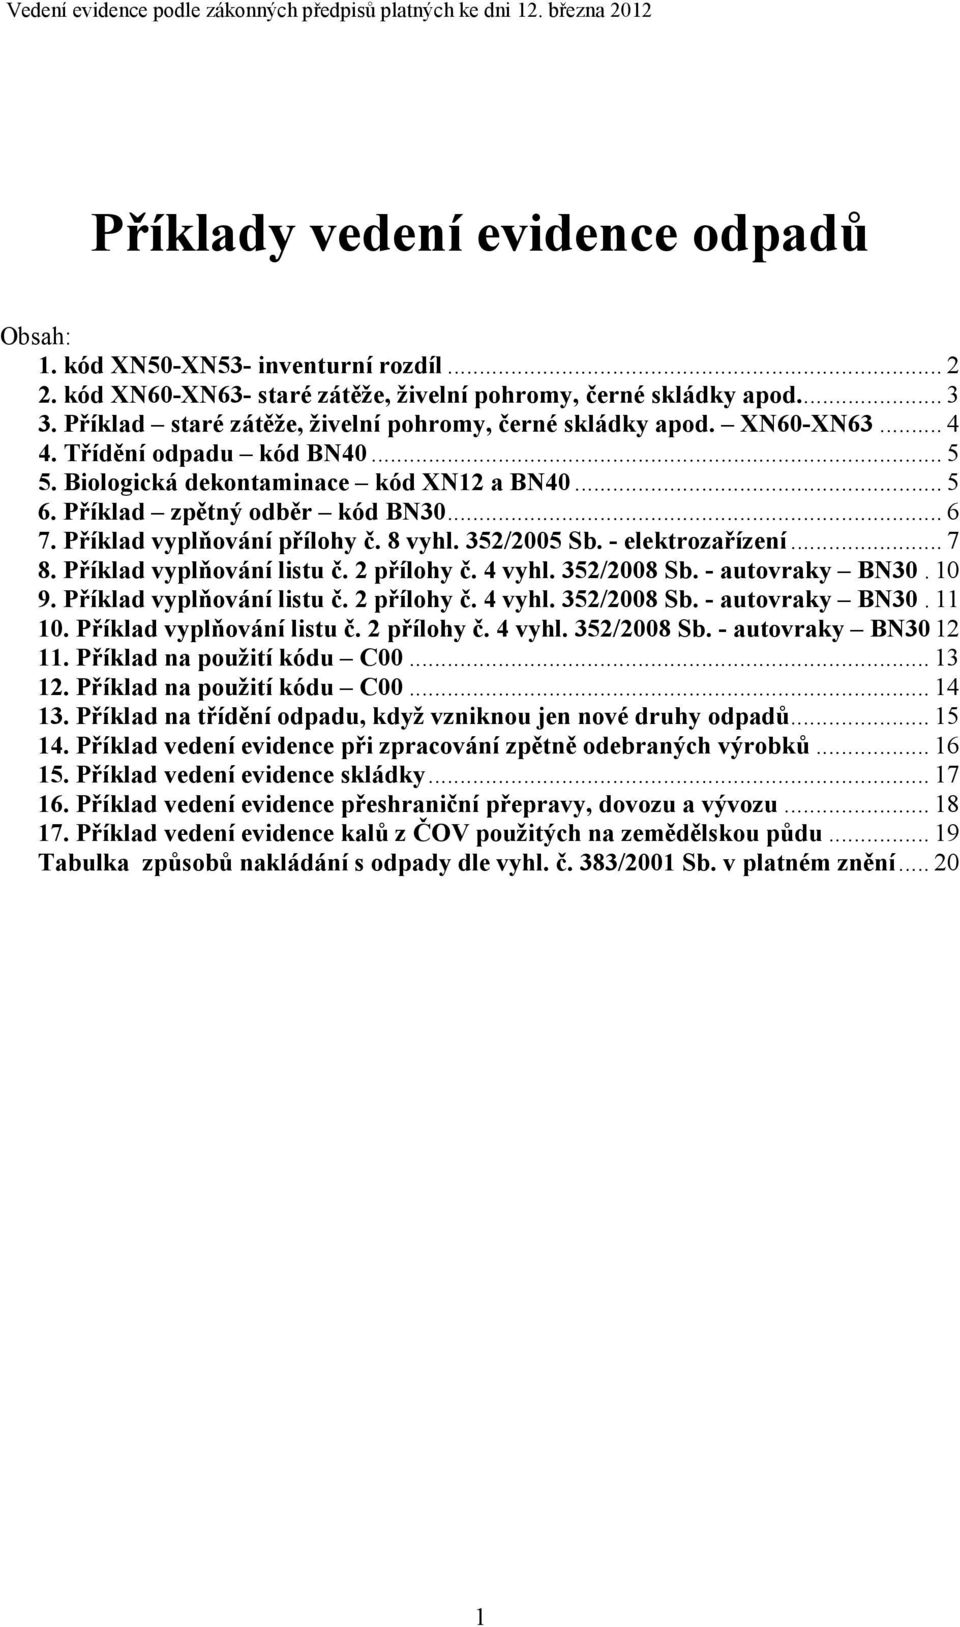 Biologická dekontaminace kód XN12 a BN40... 5 6. Příklad zpětný odběr kód BN30... 6 7. Příklad vyplňování přílohy č. 8 vyhl. 352/2005 Sb. - elektrozařízení... 7 8. Příklad vyplňování listu č.